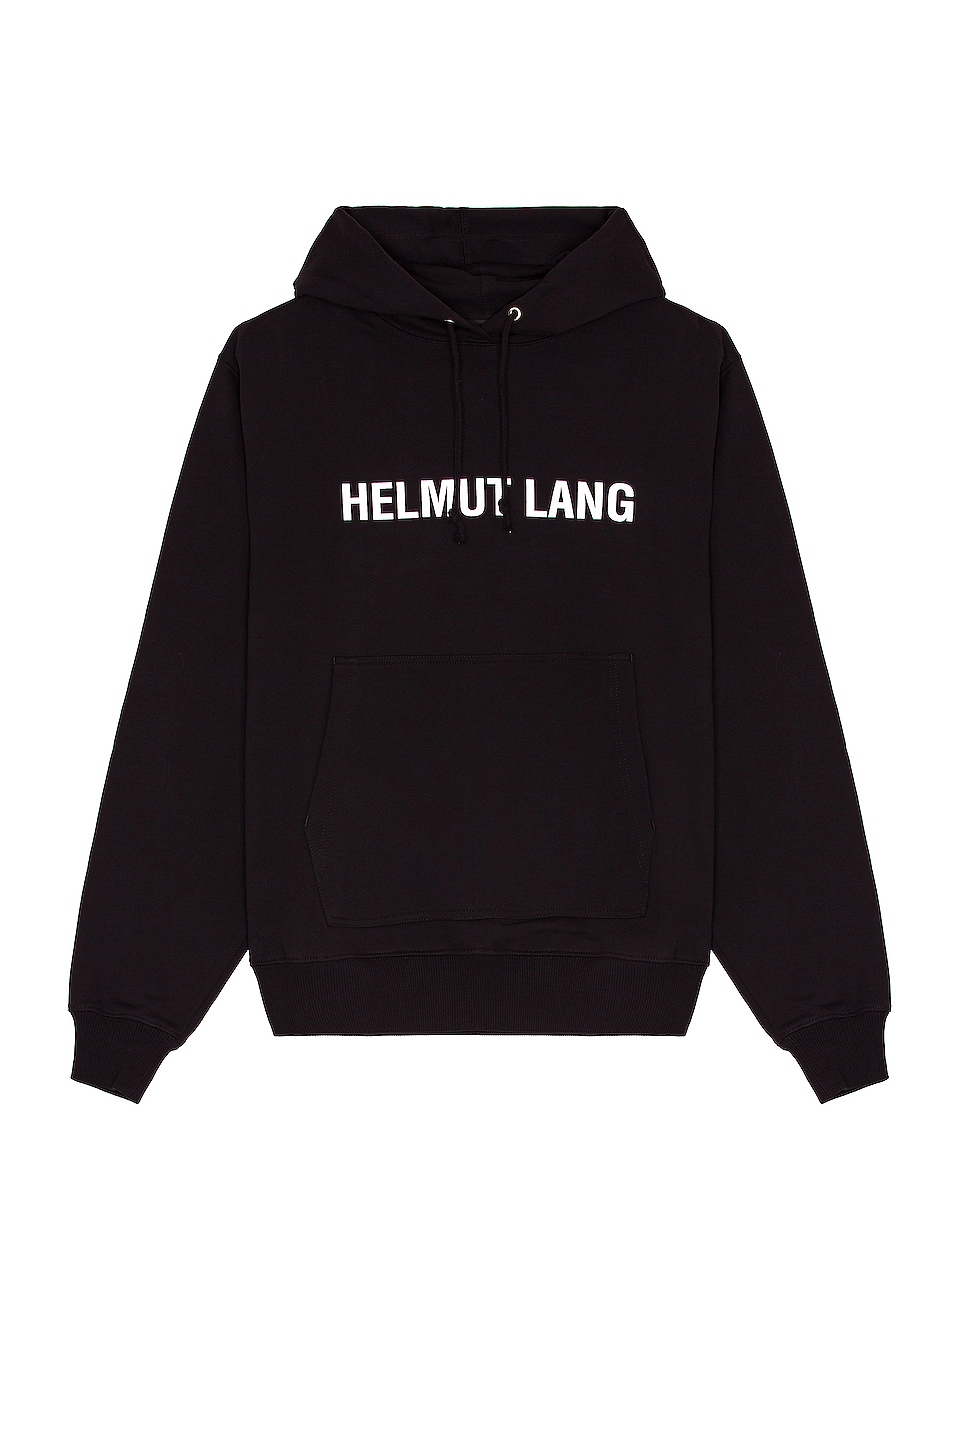 Helmut Lang Hoodie in Black | REVOLVE